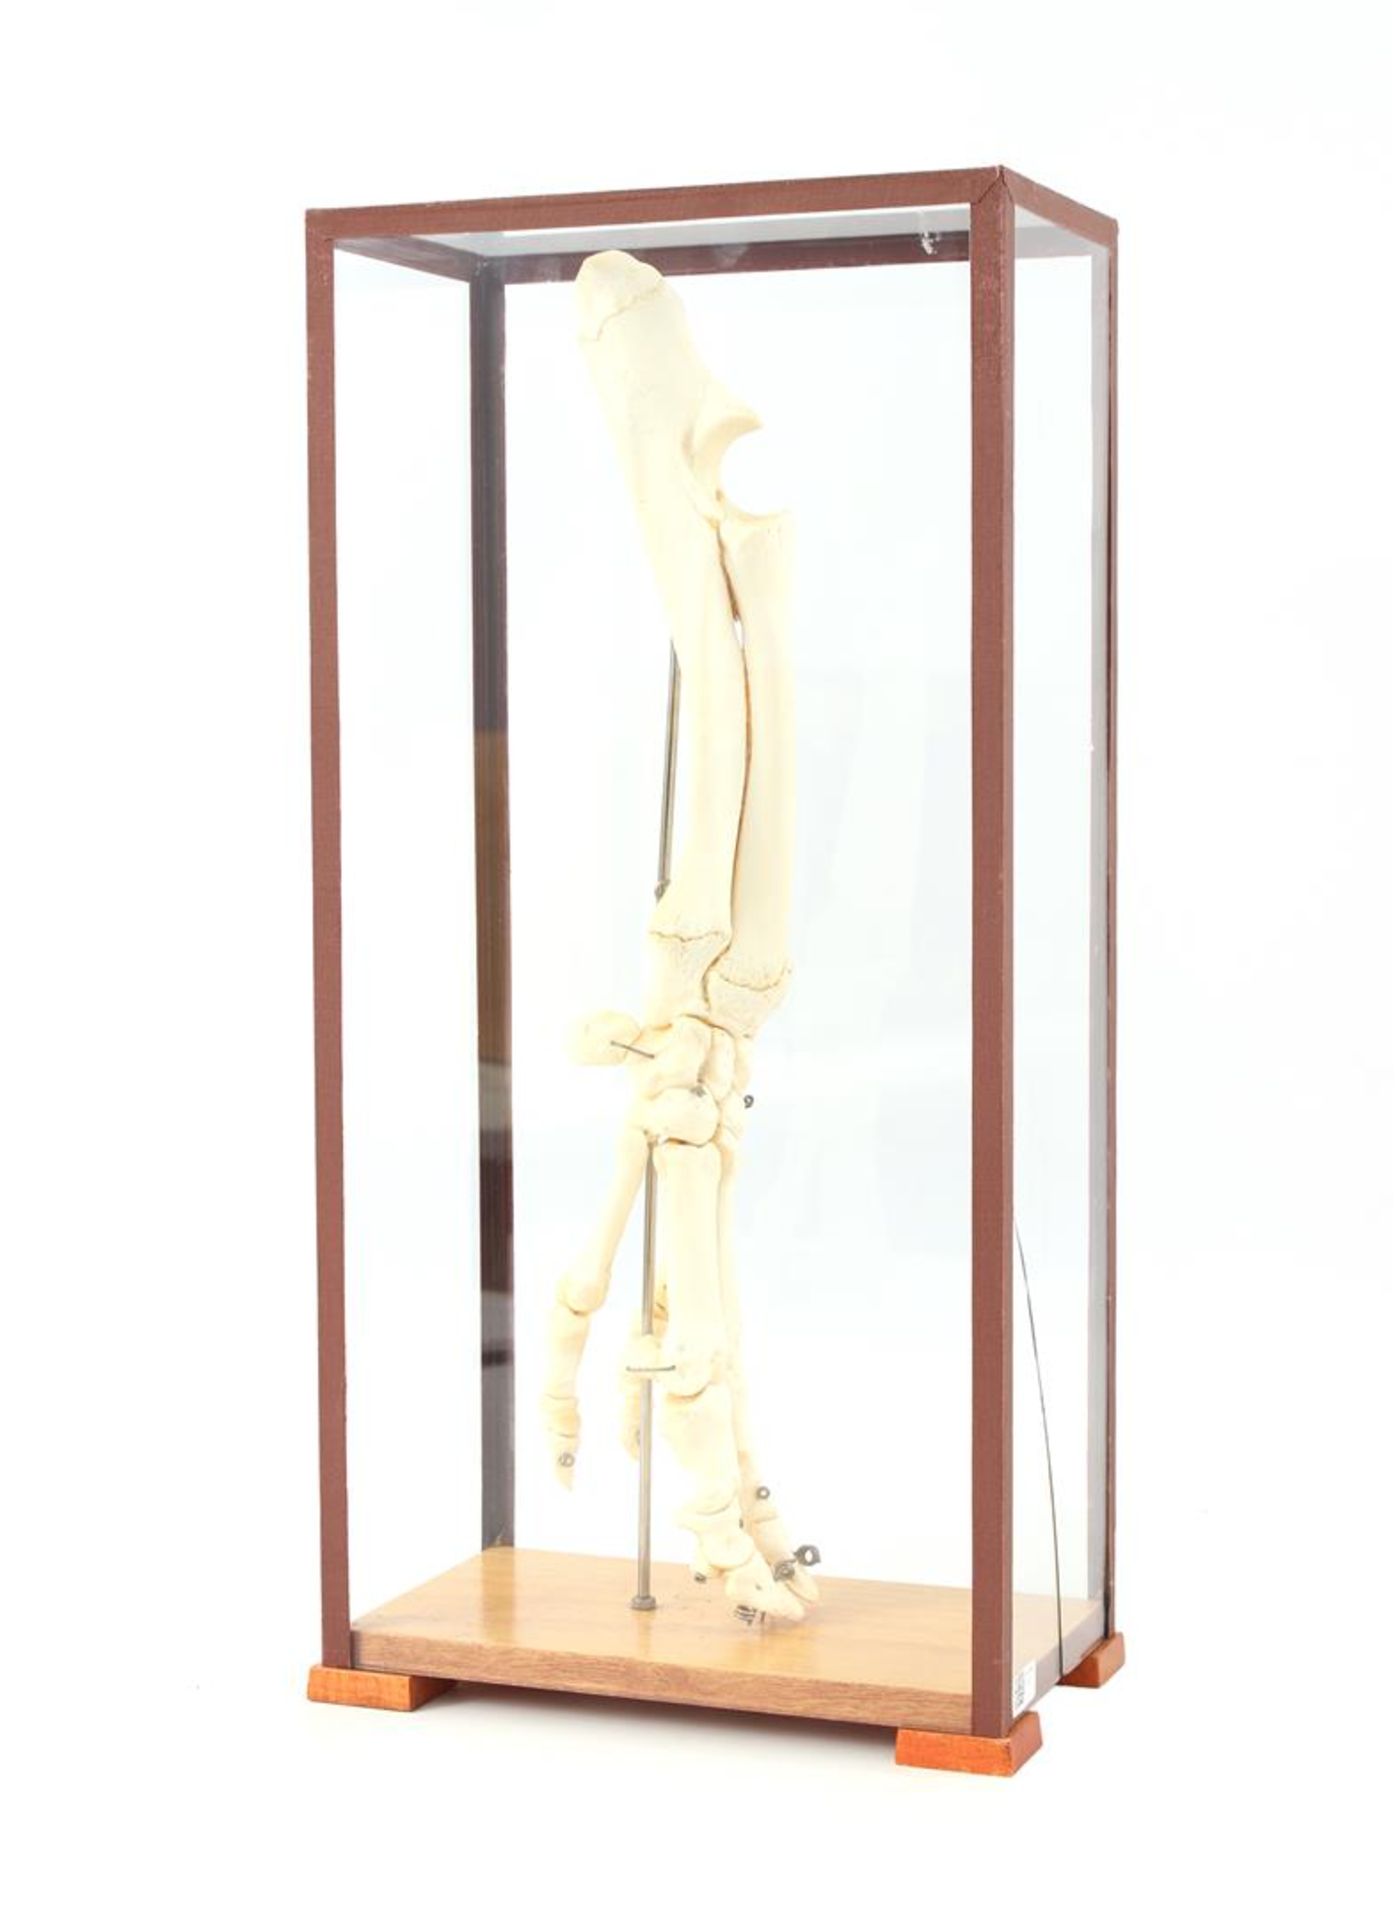 Pig's foot skeleton in display case